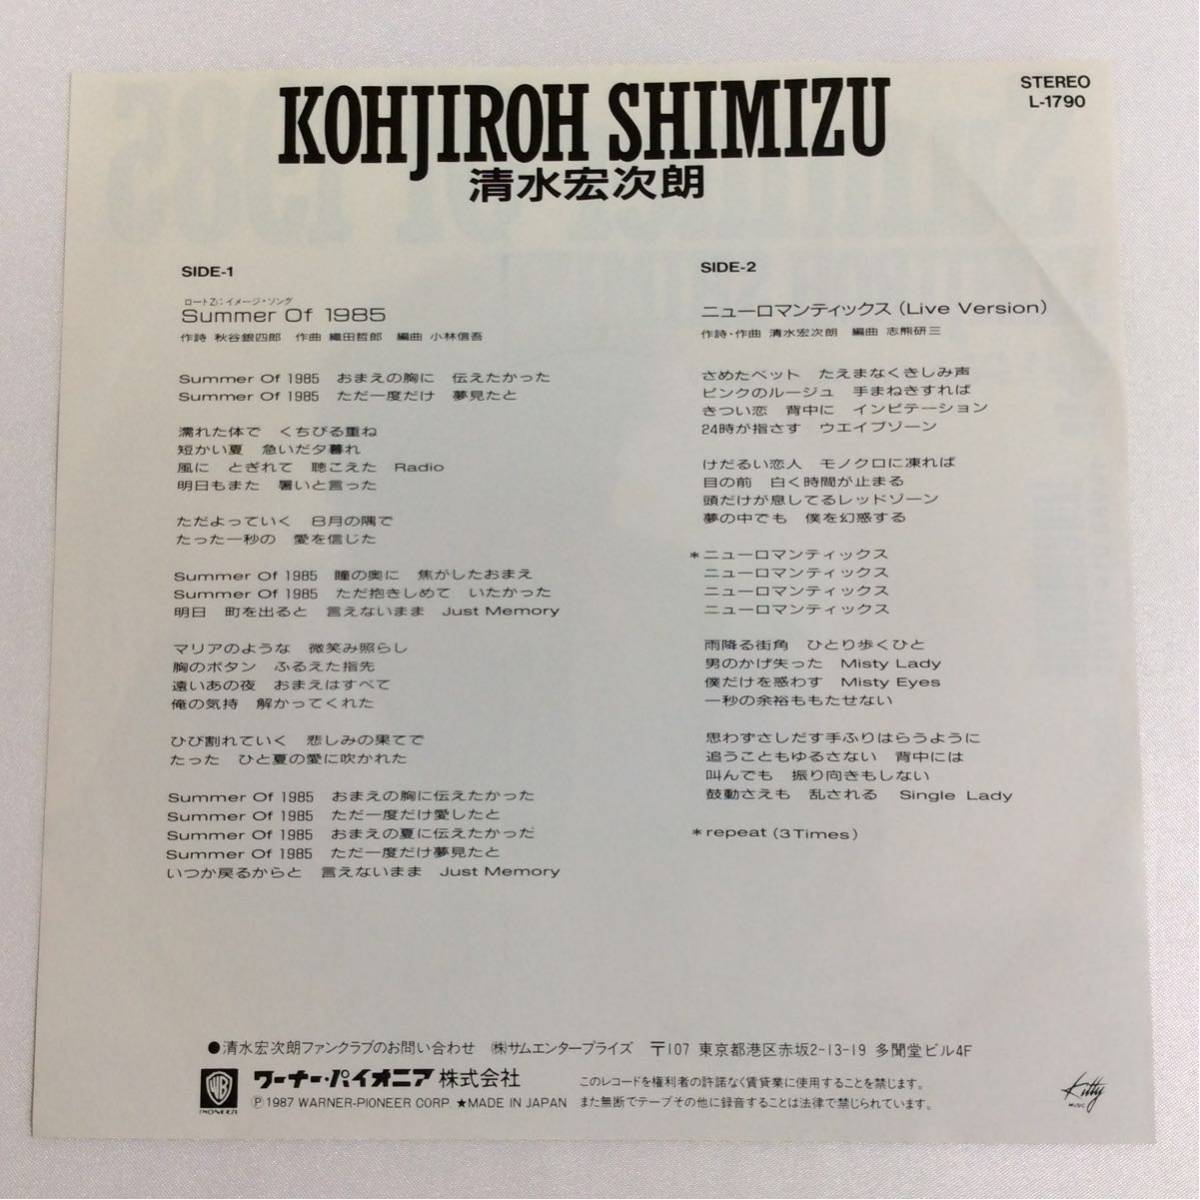 美盤 / 清水宏次朗 / SUMMER OF 1985 / ニューロマンティックス(Live Version) / 7inch レコード / EP / 1987 / 織田哲郎 /_画像2